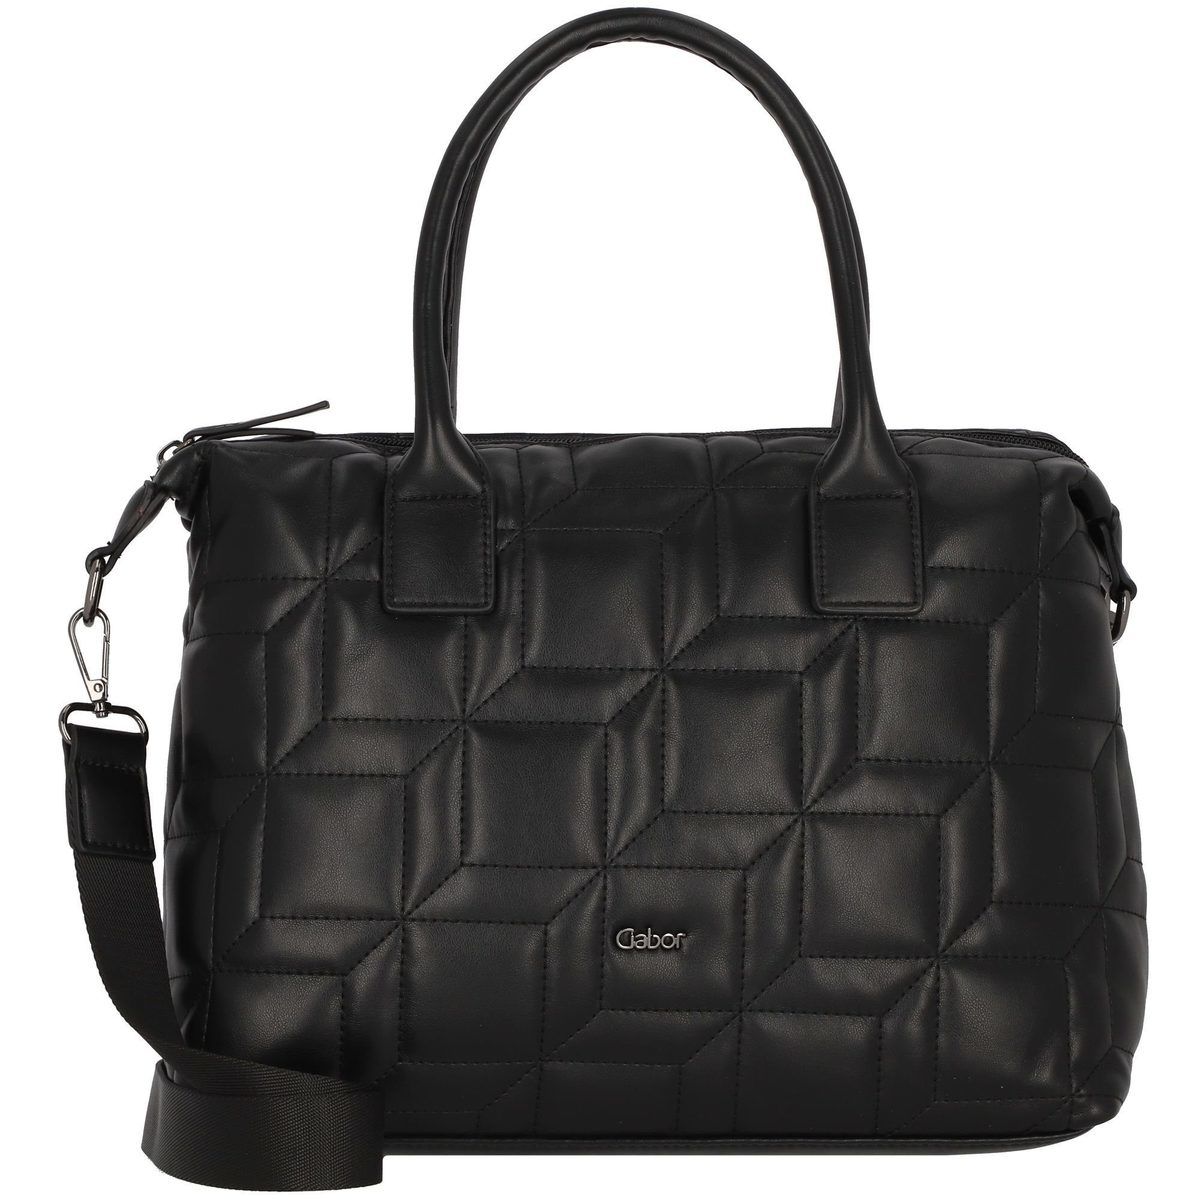 Hella Hobo Quilt 08.969.60 Black handbag